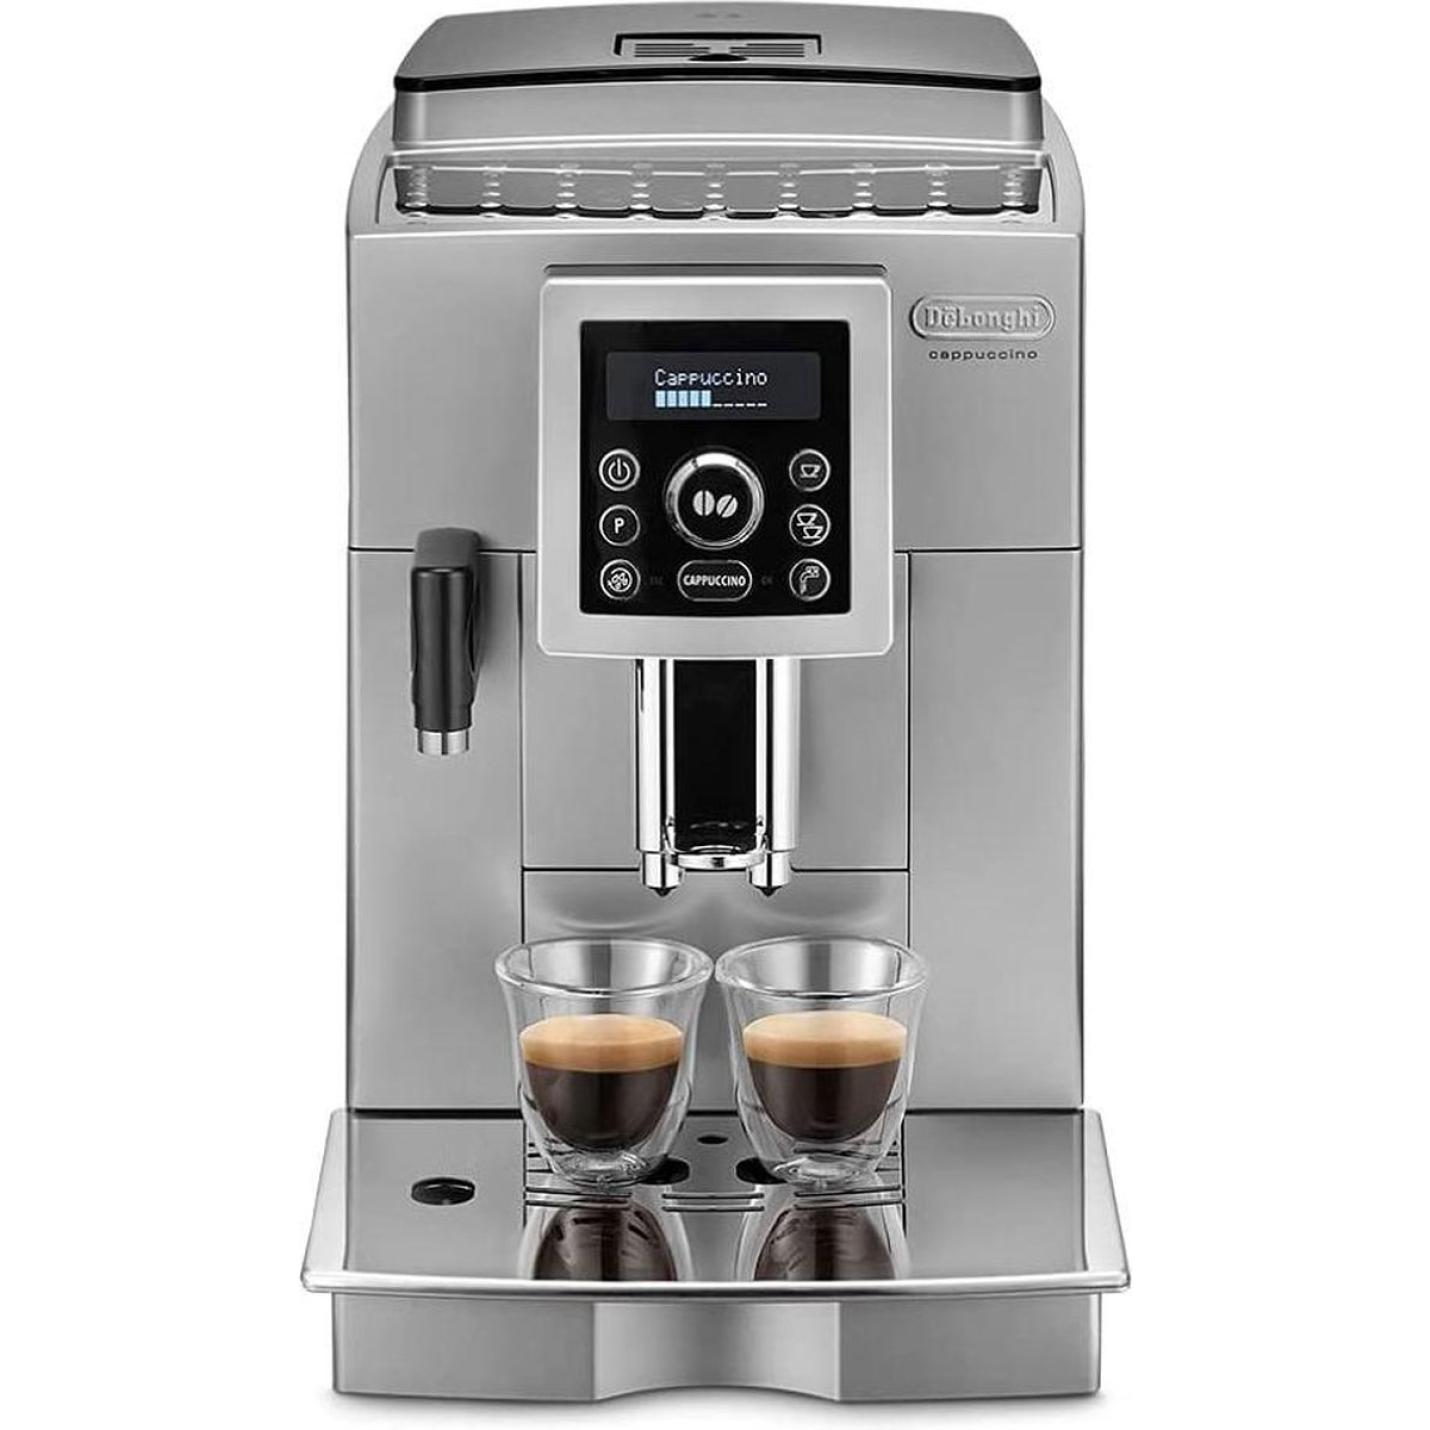 DeLonghi ECAM 23.466.S LatteCrema koffie-espresso apparaat 3